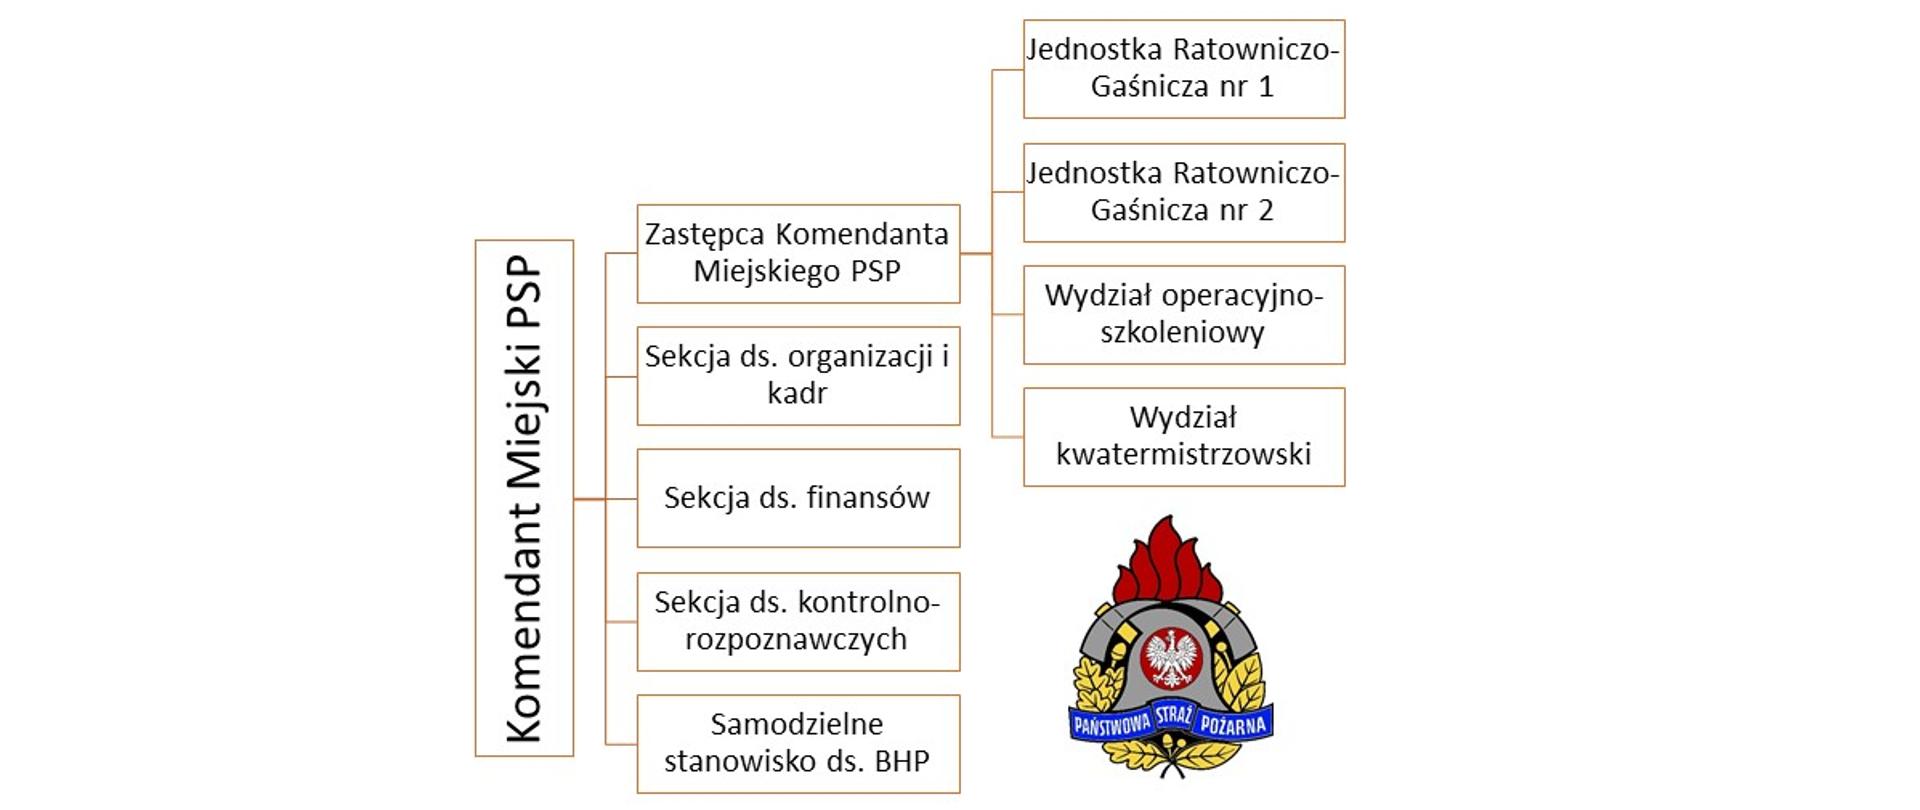 Schemat organizacyjny KM PSP Koszalin zgodny z regulaminem KM PSP Koszalin